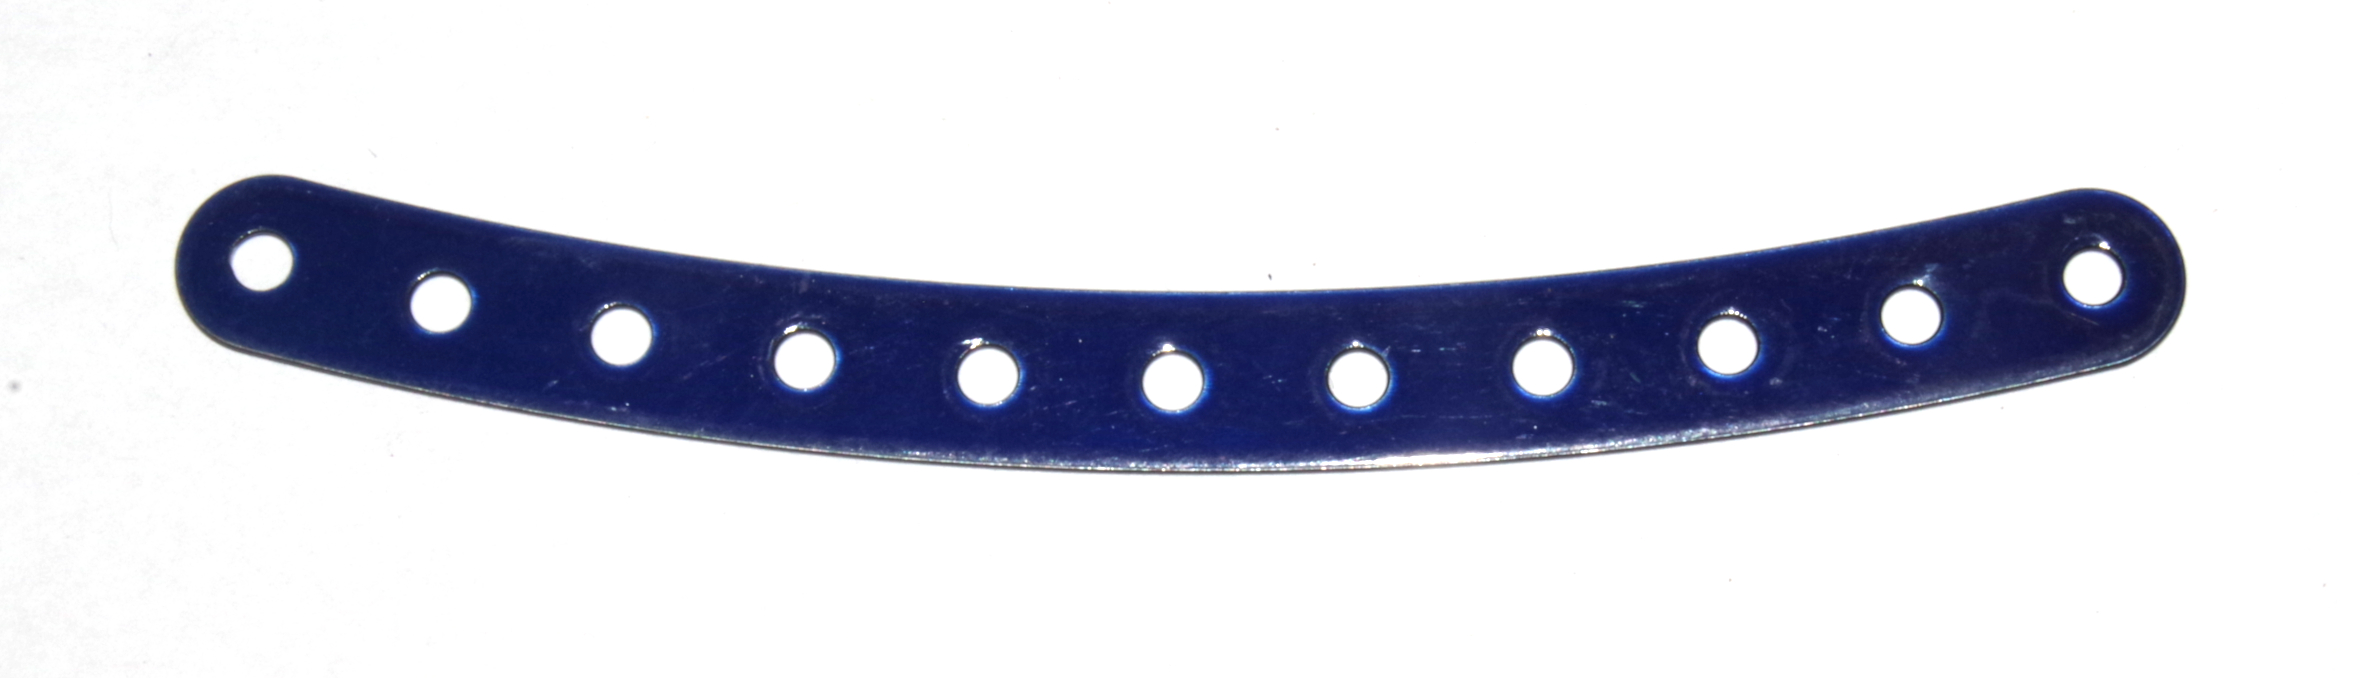 89 Curved Strip 11 Hole Iridescent Blue Original